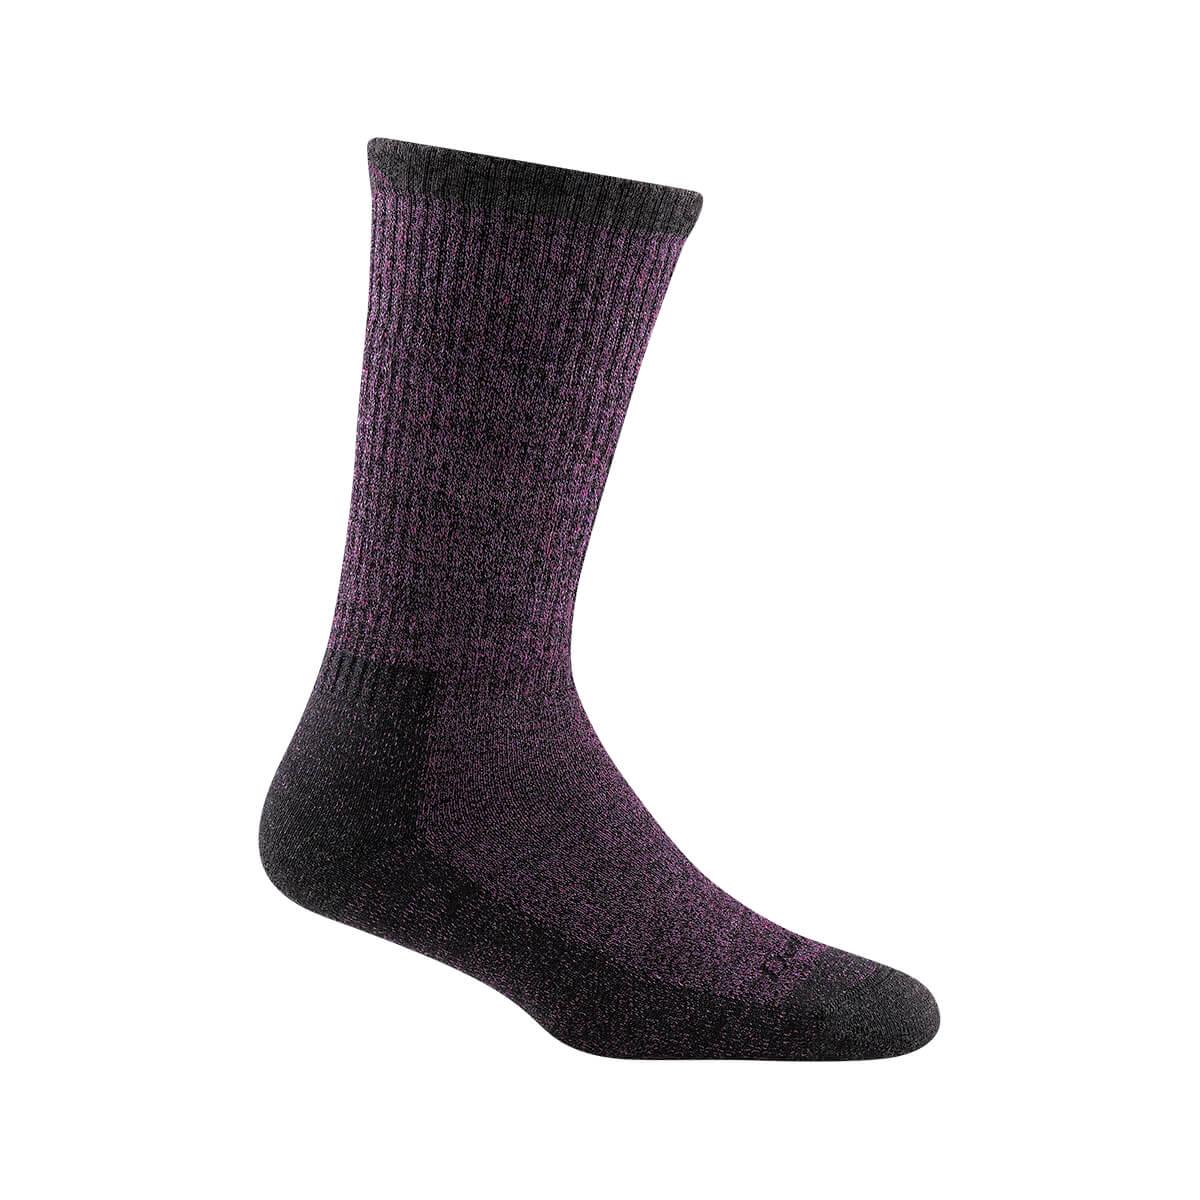  Women's Nomad Boot Sock Full Cushion Socks